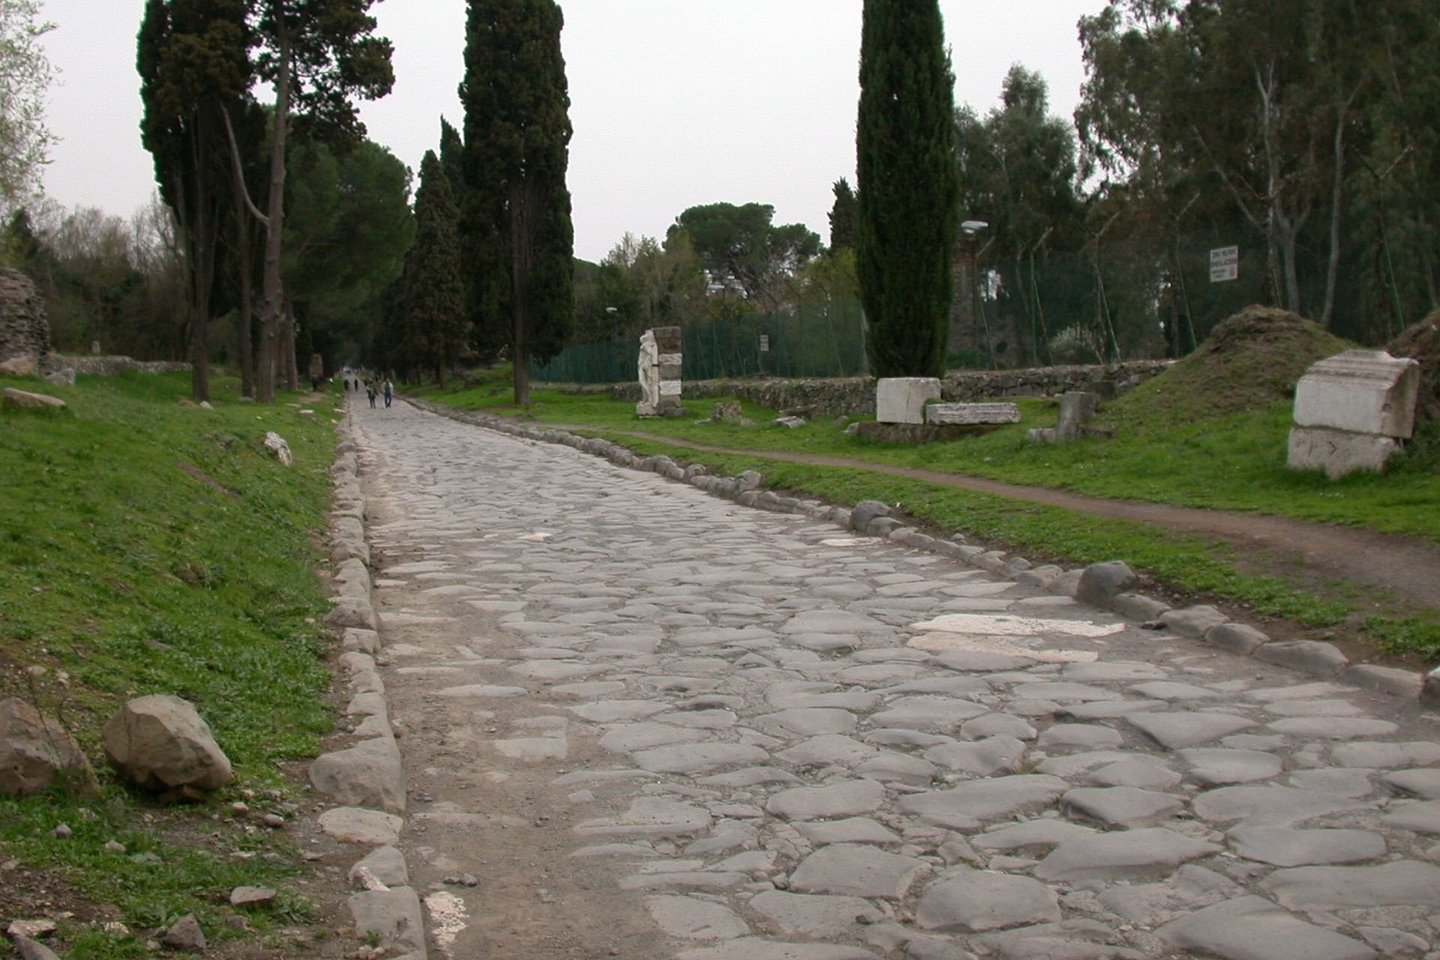  Via Appa - vienas seniausių Romos imperijos maršrutų, atidarytas 312 m. pr.m.e.<br> Wikimedia commons